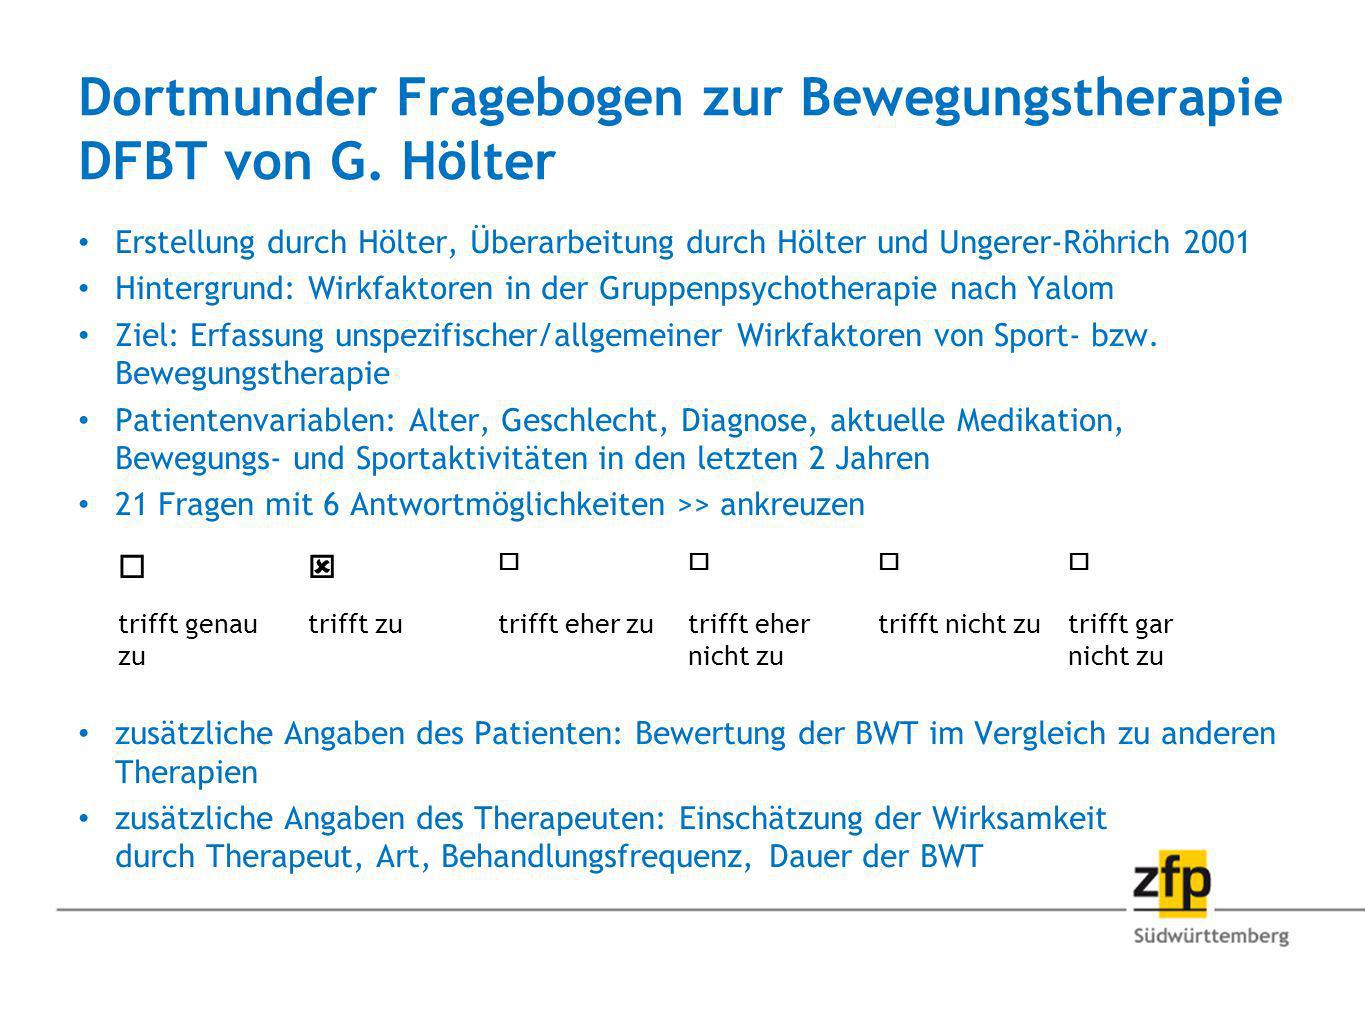 Dortmunder Fragebogen zur Bewegungstherapie DFBT von G. Hölter